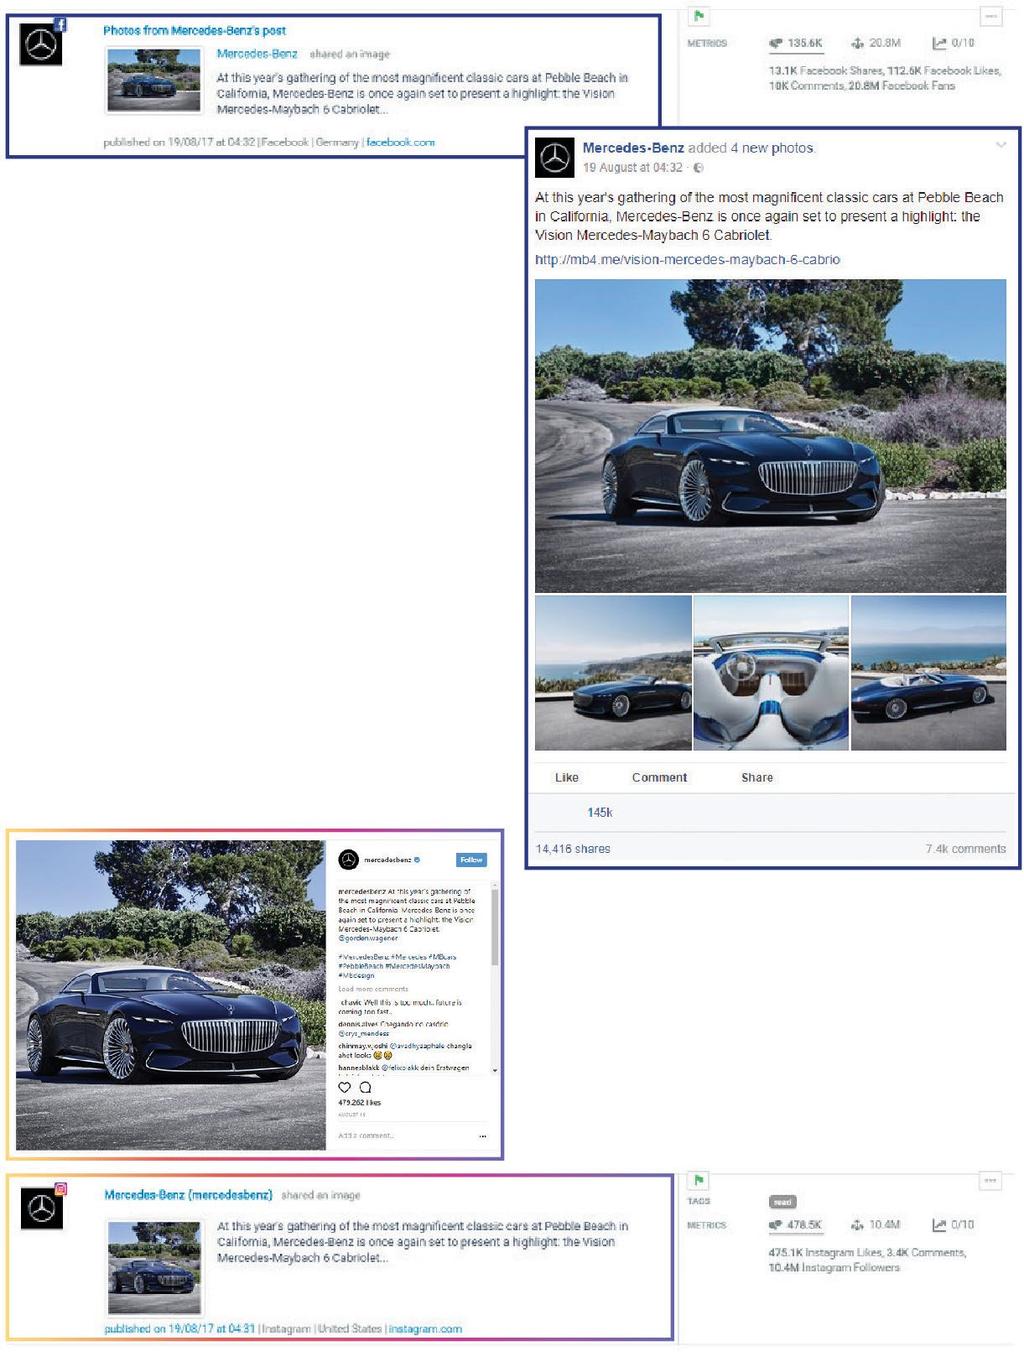 Engagement rate sui diversi canali I post più popolari su Facebook, Twitter e Instagram Grazie ad una strategia basata sulle immagini, Mercedes-Benz è riuscita a sfruttare al meglio il